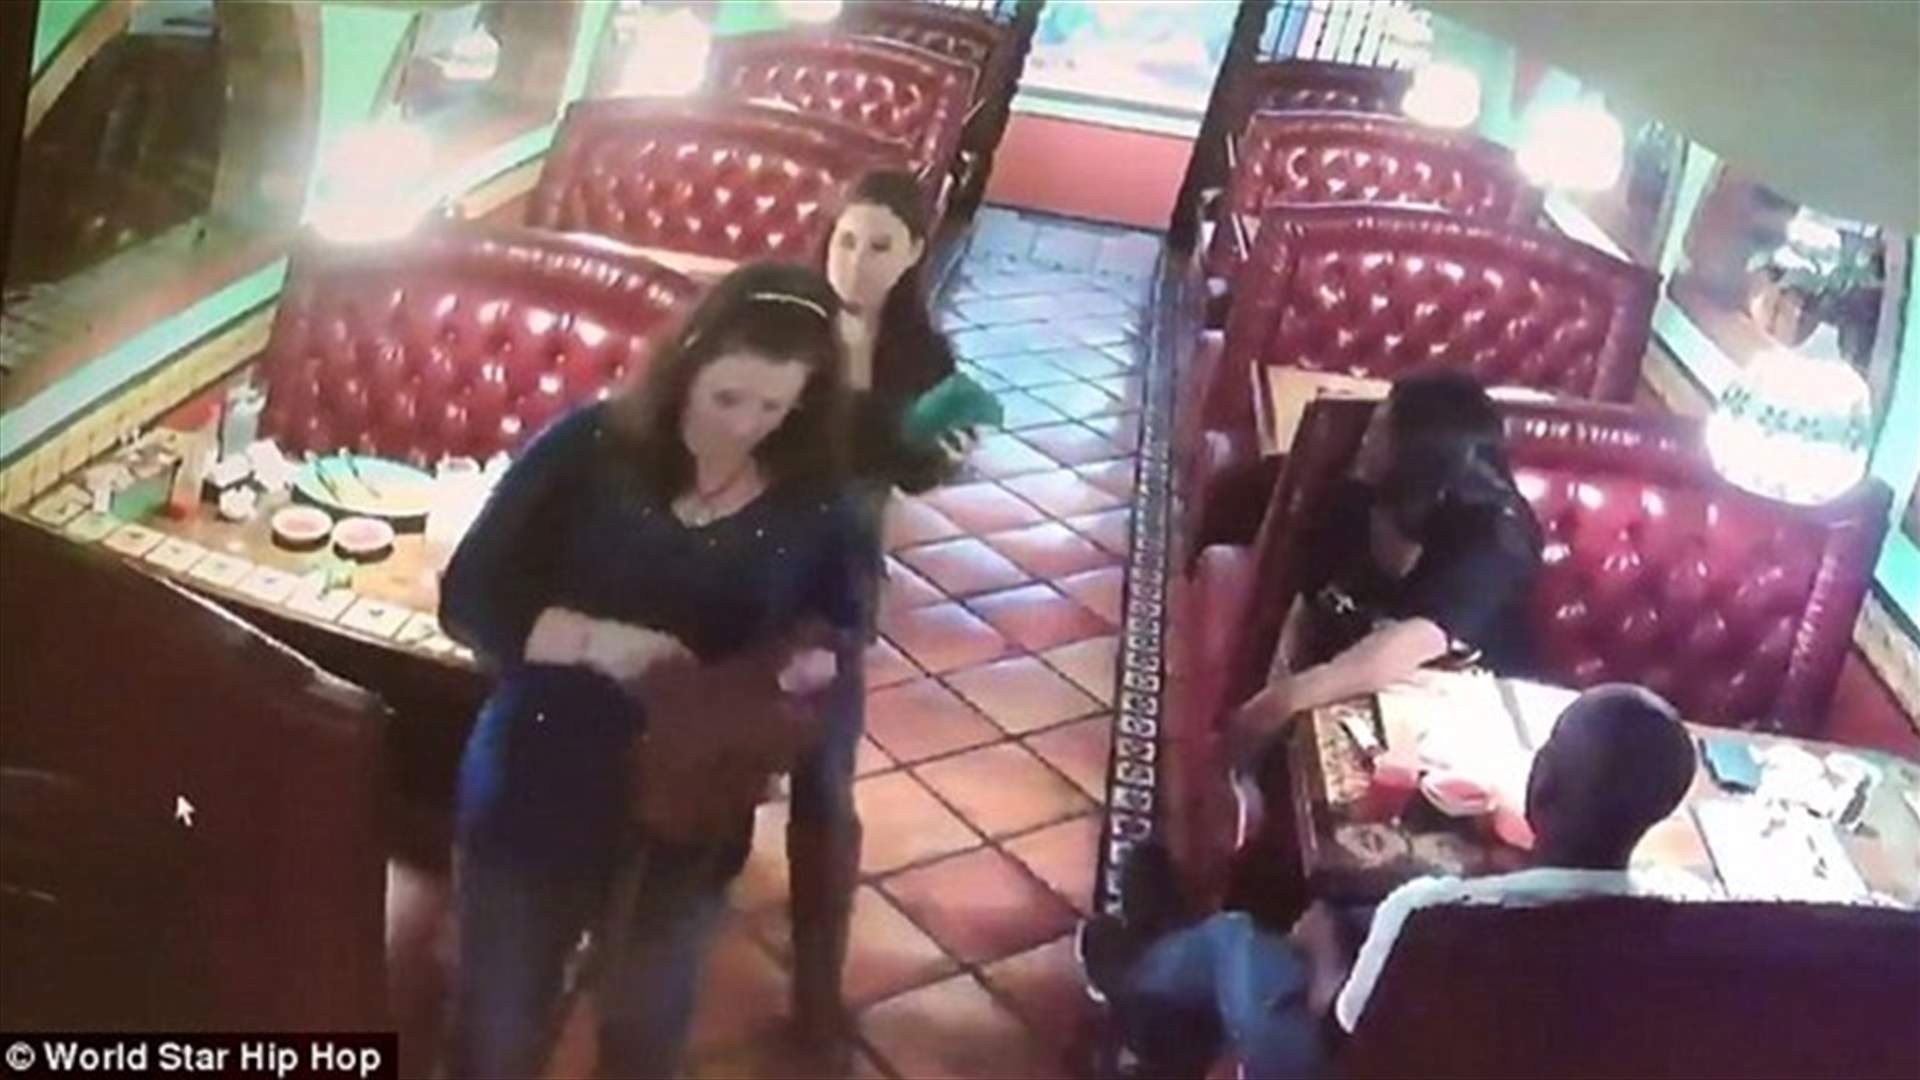 بالفيديو – ثنائي سرق بقشيش نادلة في المطعم... وكاميرا المراقبة في المرصاد